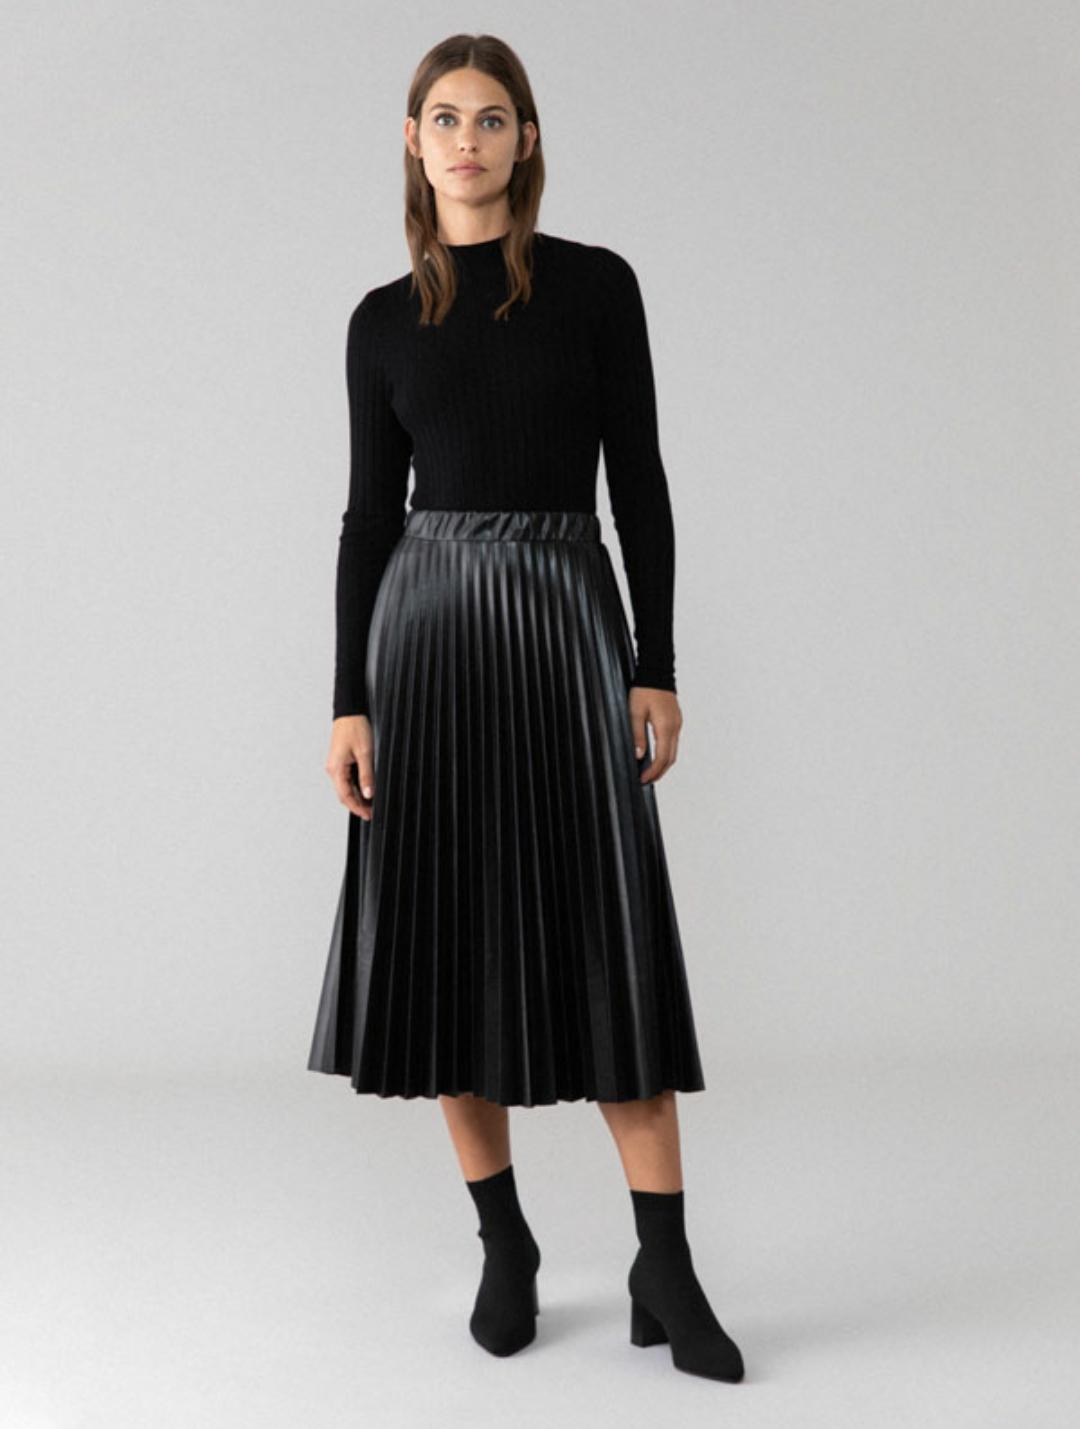 Falda de tiro alto, plisada, de efecto piel en color negro (15’99€)